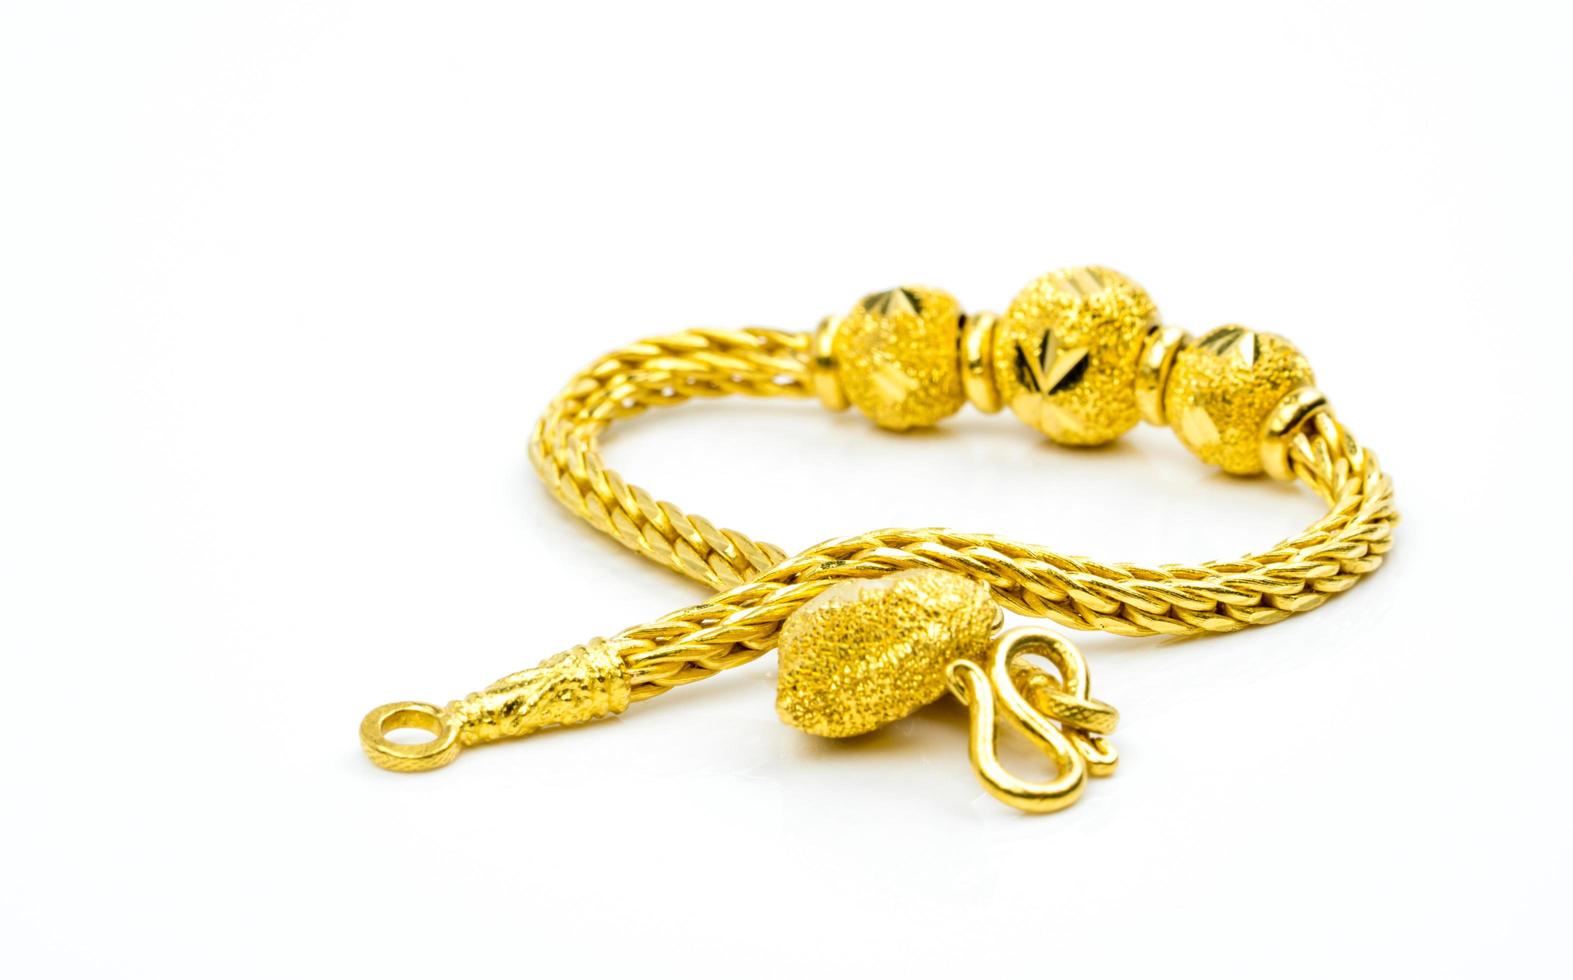 pulseira de joias de ouro estilo tailandês isolada no fundo branco com espaço de cópia, basta adicionar seu próprio texto. presente de ano novo chinês. negócio de loja de ouro. foto